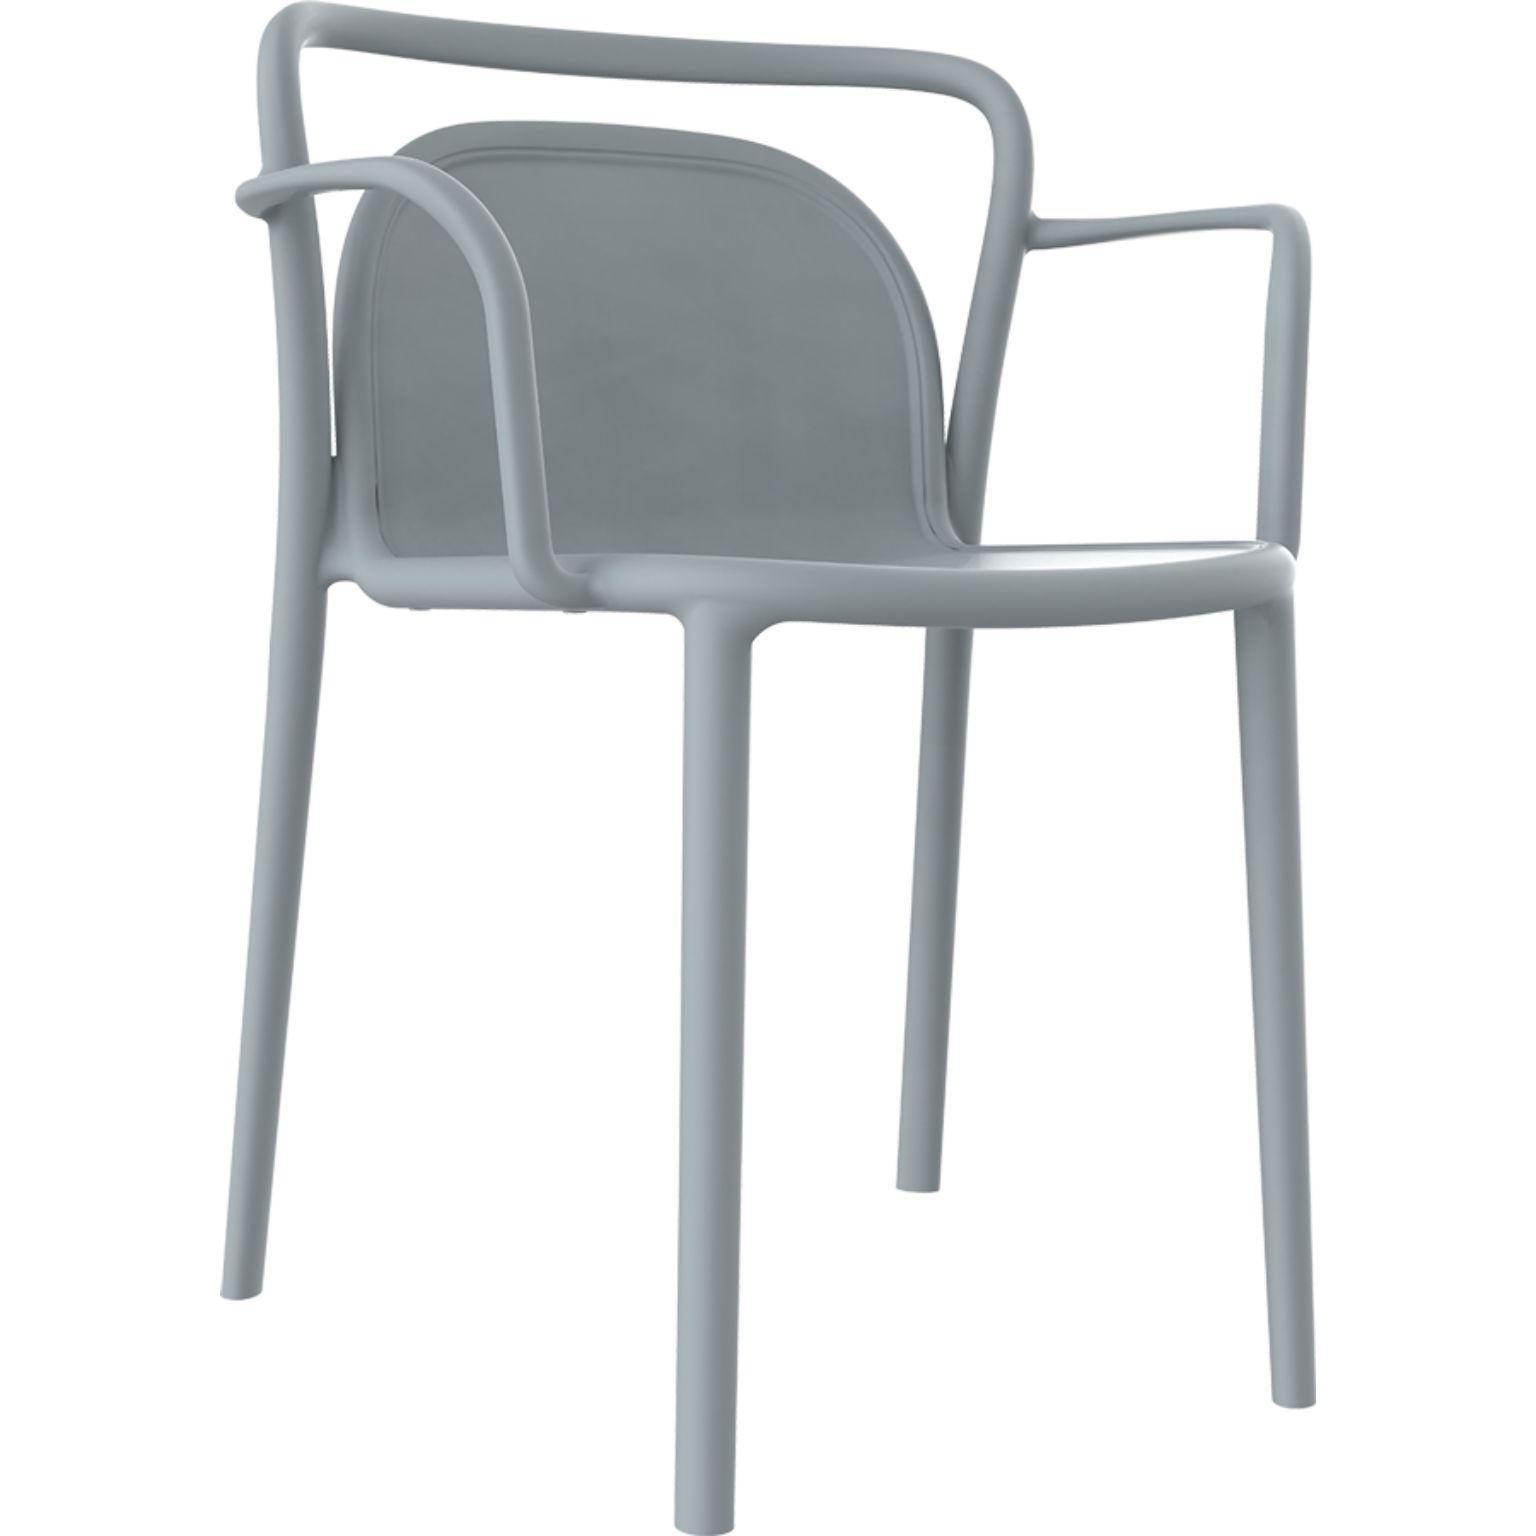 Set aus 4 grauen classe stühlen von Mowee.
Abmessungen: T52 x B52 x H77 cm (Sitzhöhe 45 cm).
MATERIAL: Polypropylenharz mit Glasfasern.
Gewicht: 4.6 kg
Auch in verschiedenen Farben erhältlich. Optional kann ein Kissen hinzugefügt werden.